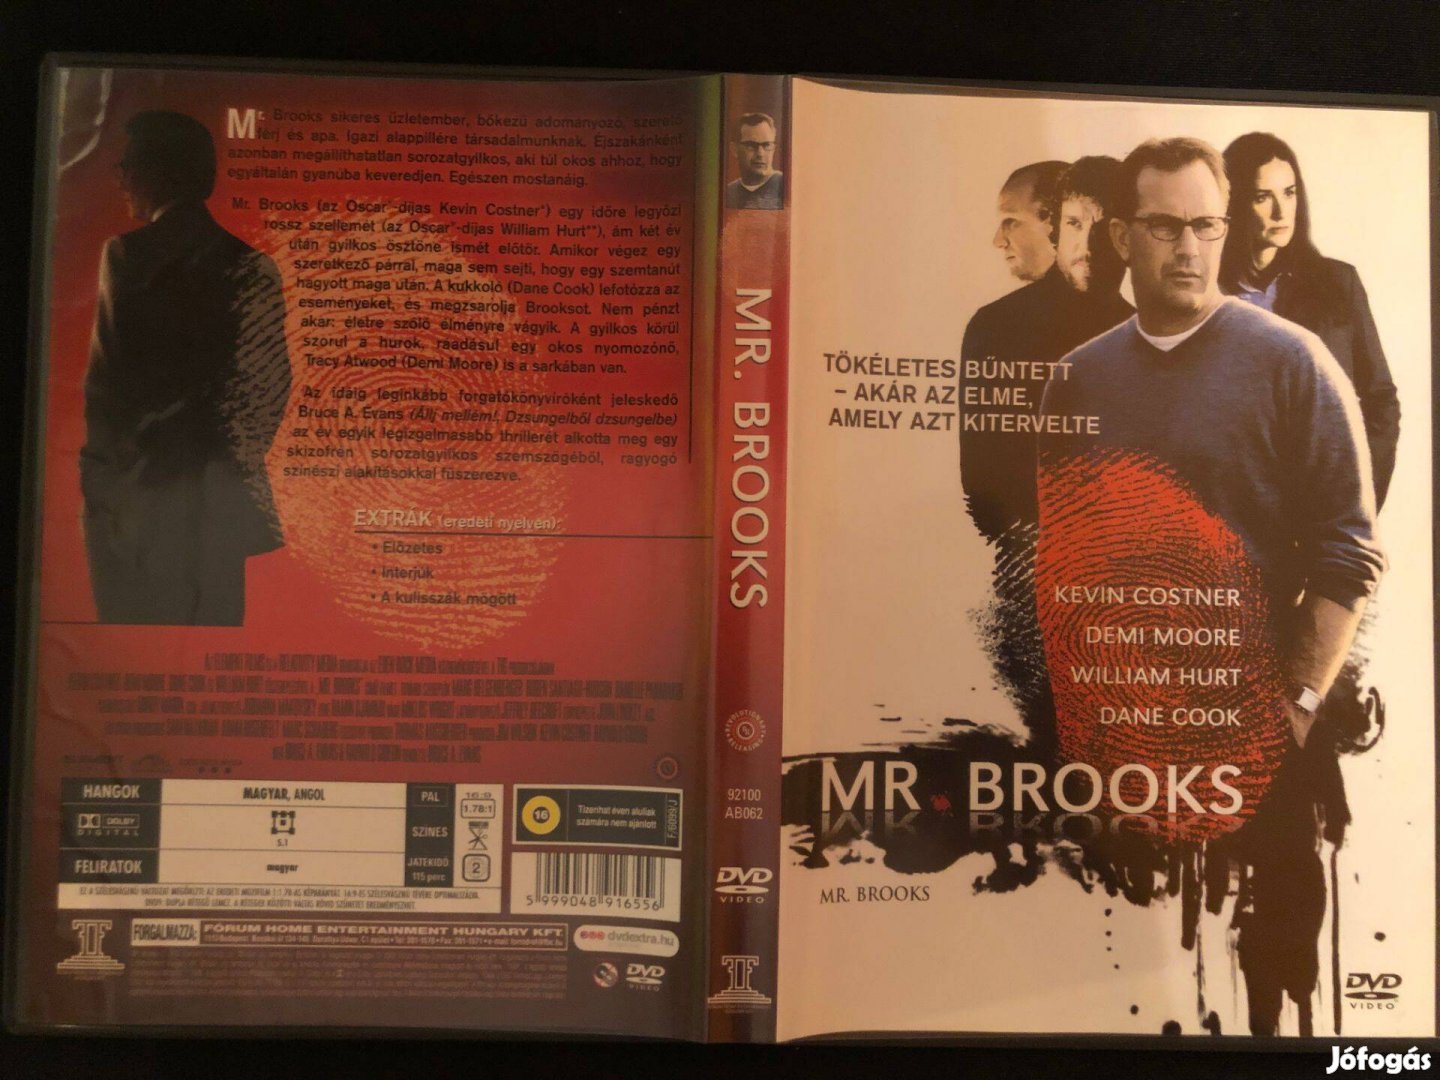 Mr. Brooks (karcmentes, Kevin Costner, Demi Moore) DVD